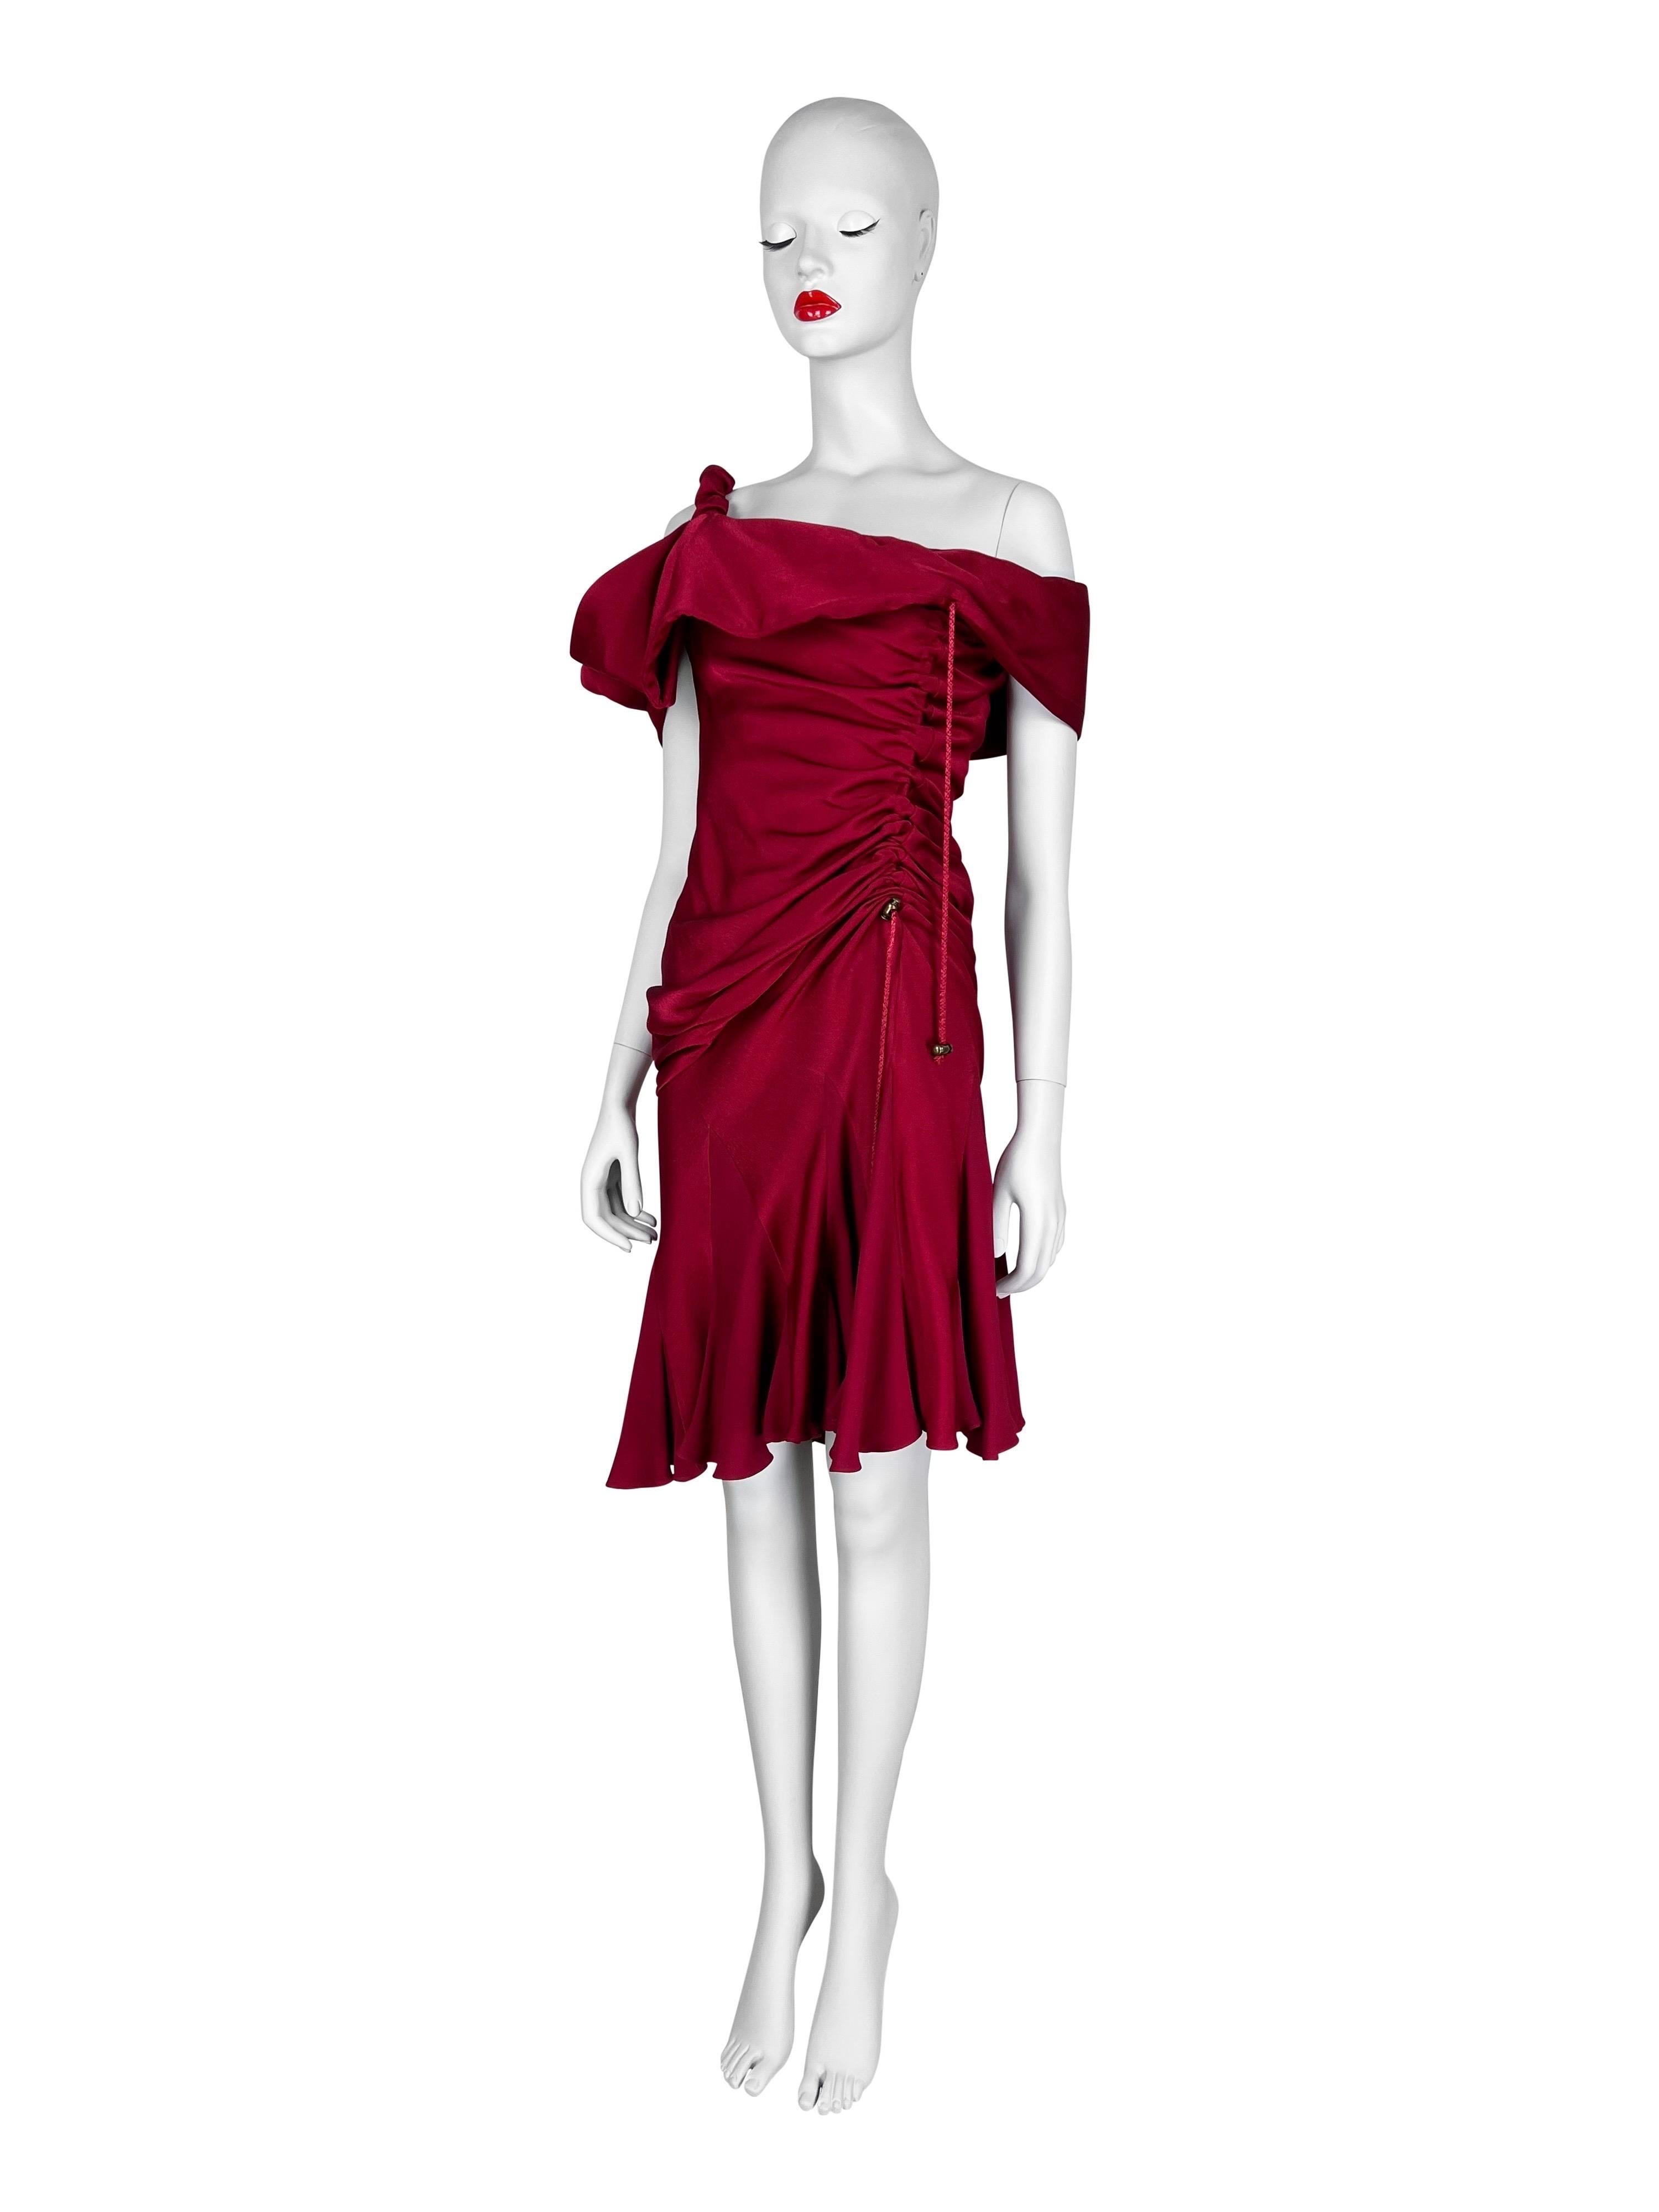 Une robe magnifique et amusante avec de multiples options de style grâce à la dentelle drapée ajustable. 

Taille FR 38, US 4, mais peut s'adapter à une taille supérieure.

Mesures (à plat sur un côté) :

D'une aisselle à l'autre - 42 cm (16,5